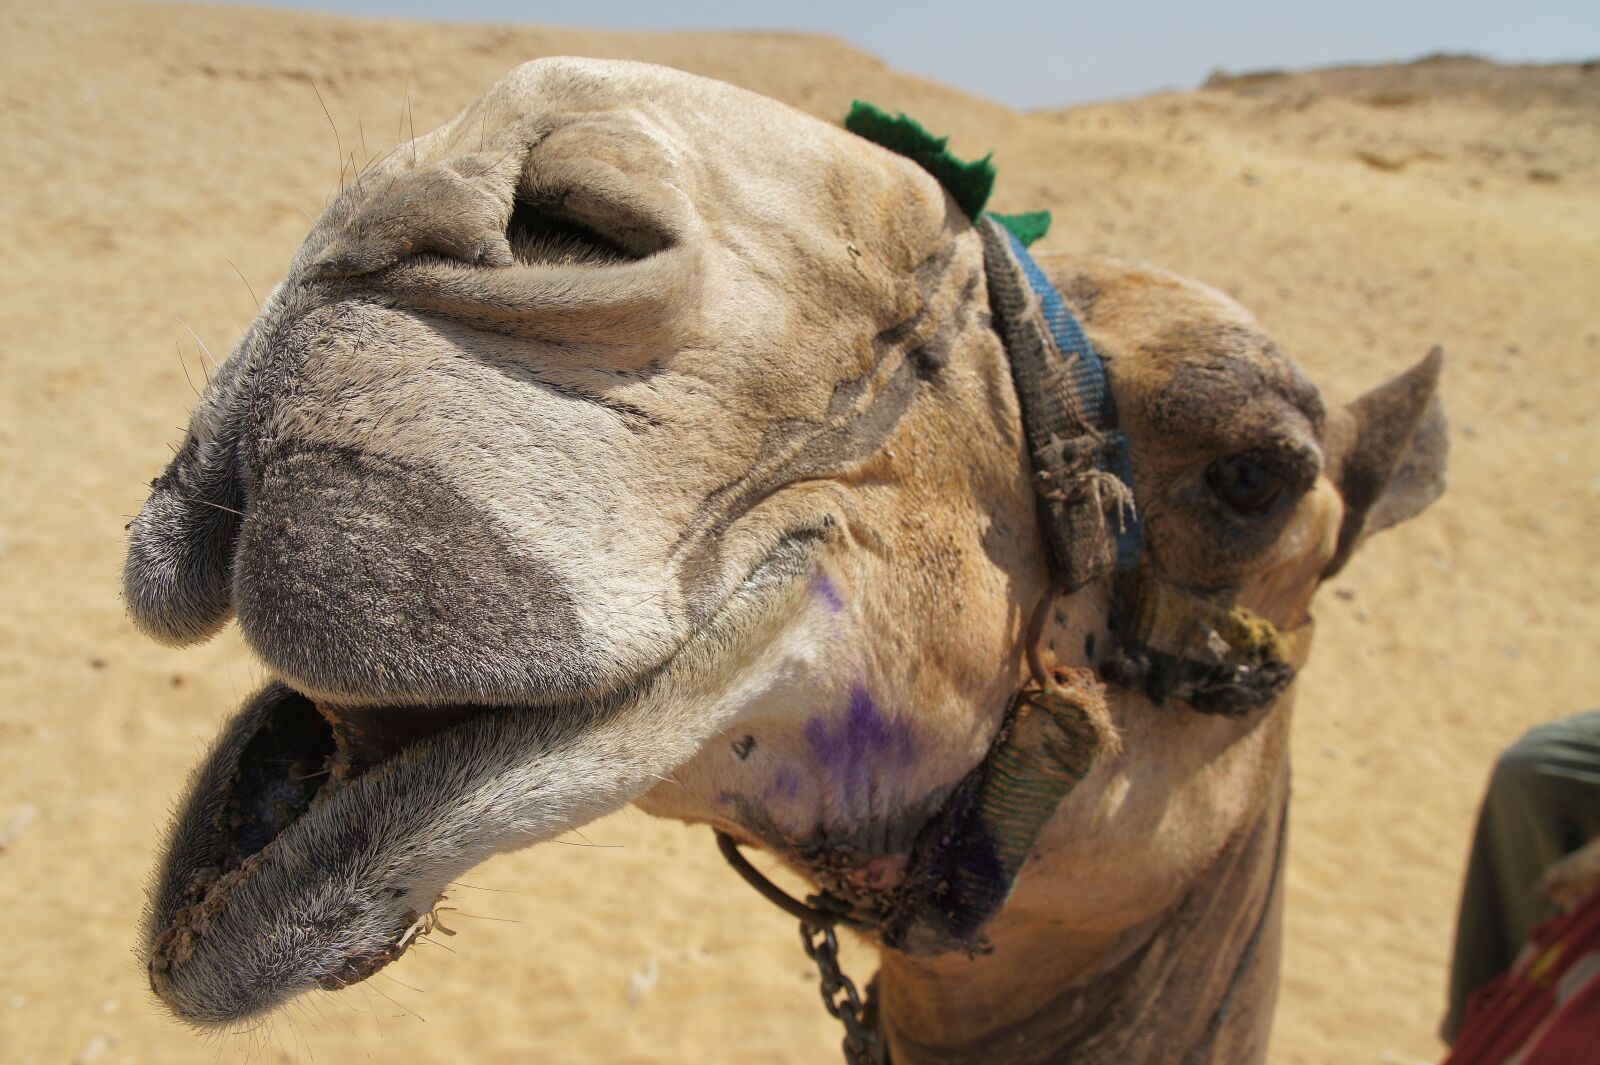 Sony E 18-200mm F3.5-6.3 OSS sample photo. Egypt, camel, dromedary photography